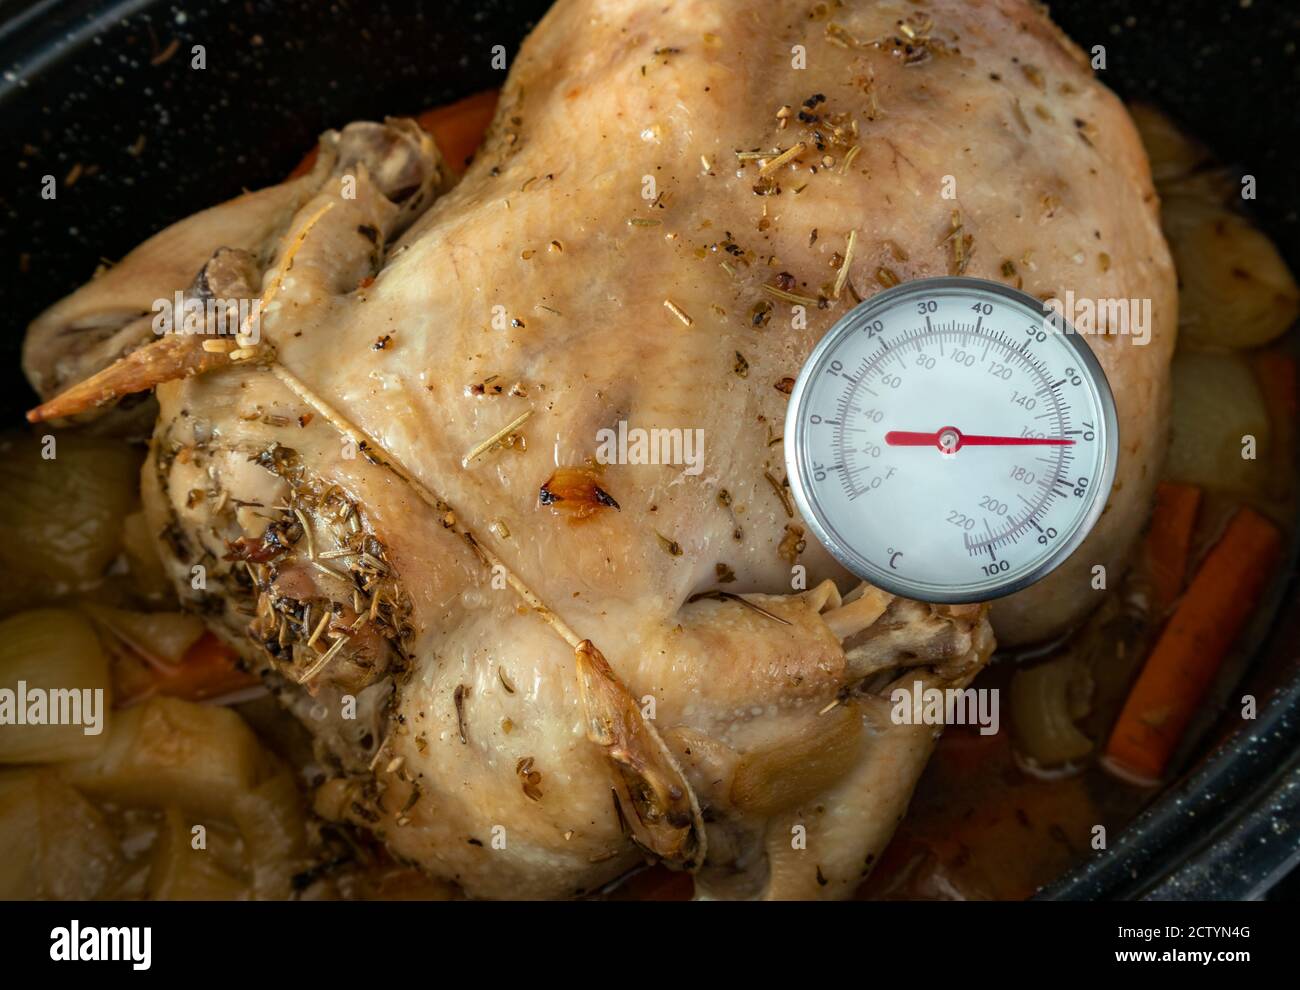 Mesure de la température interne du poulet cuit au four. Thermomètre à viande / lecture instantanée pour mesurer la température des aliments. Poulet entier dans une casserole noire. Banque D'Images